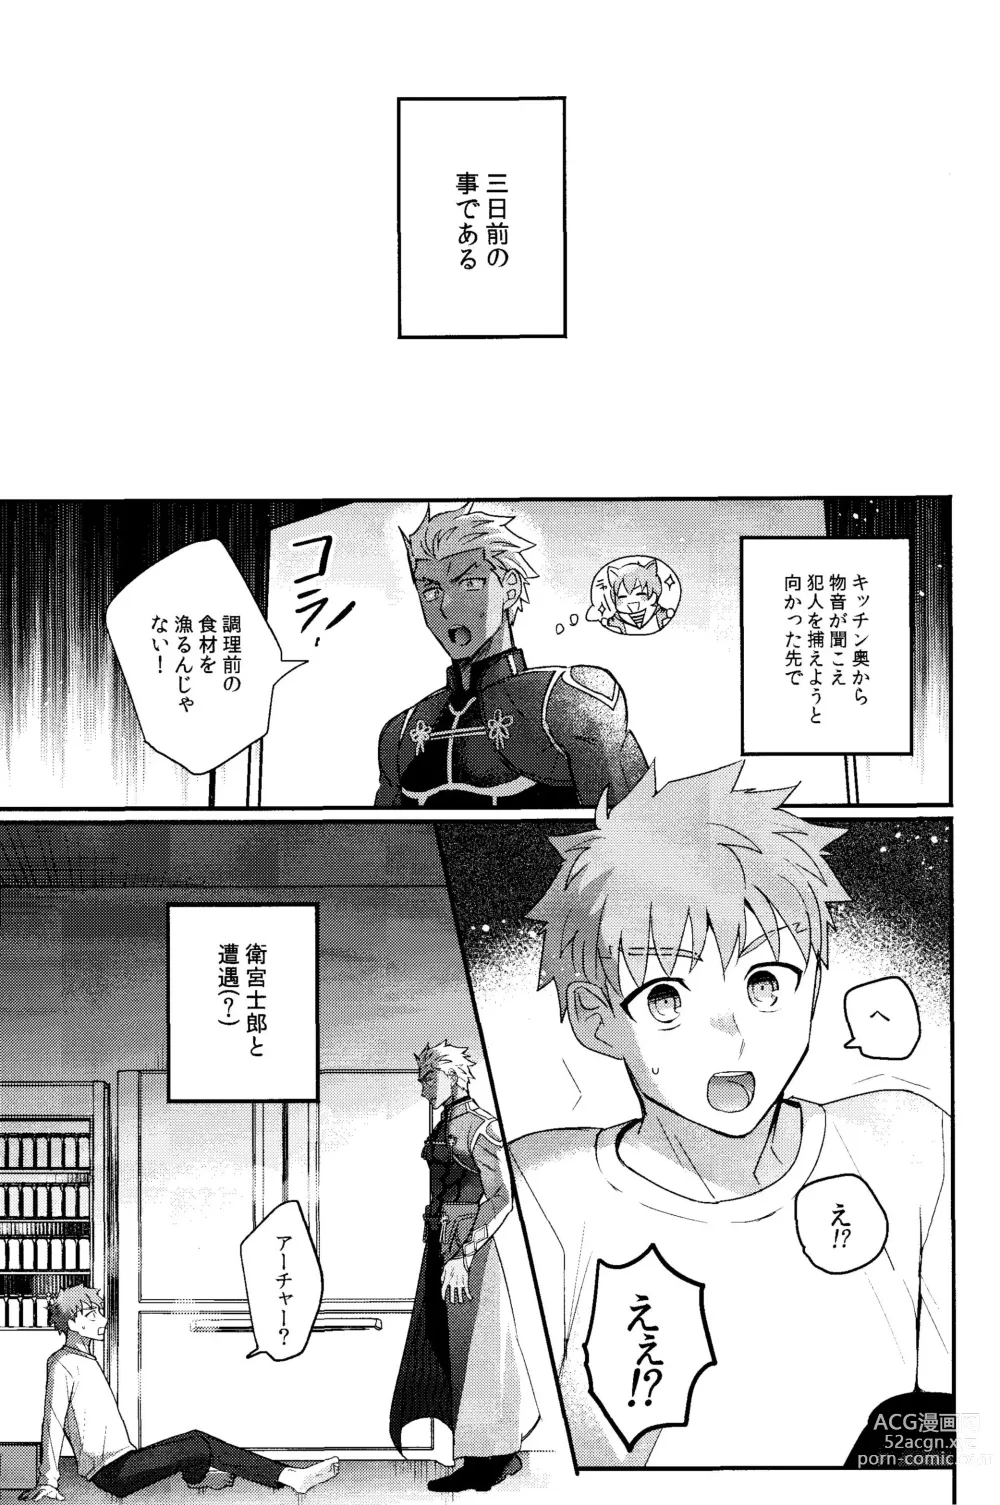 Page 4 of doujinshi Iru